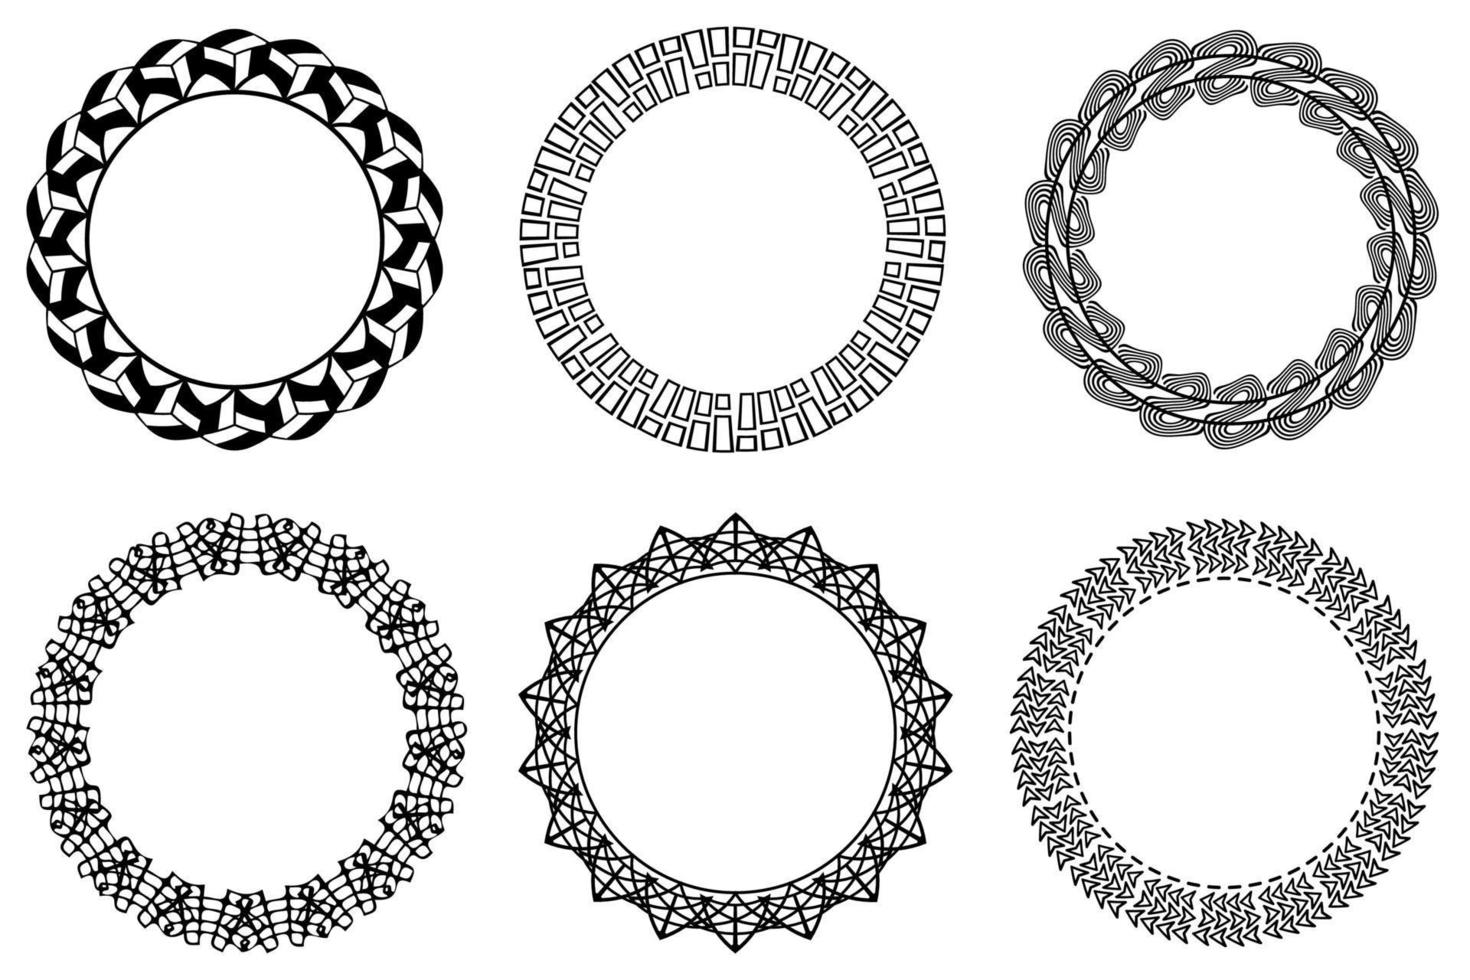 Vector circle frame set. Collection of black circular frames